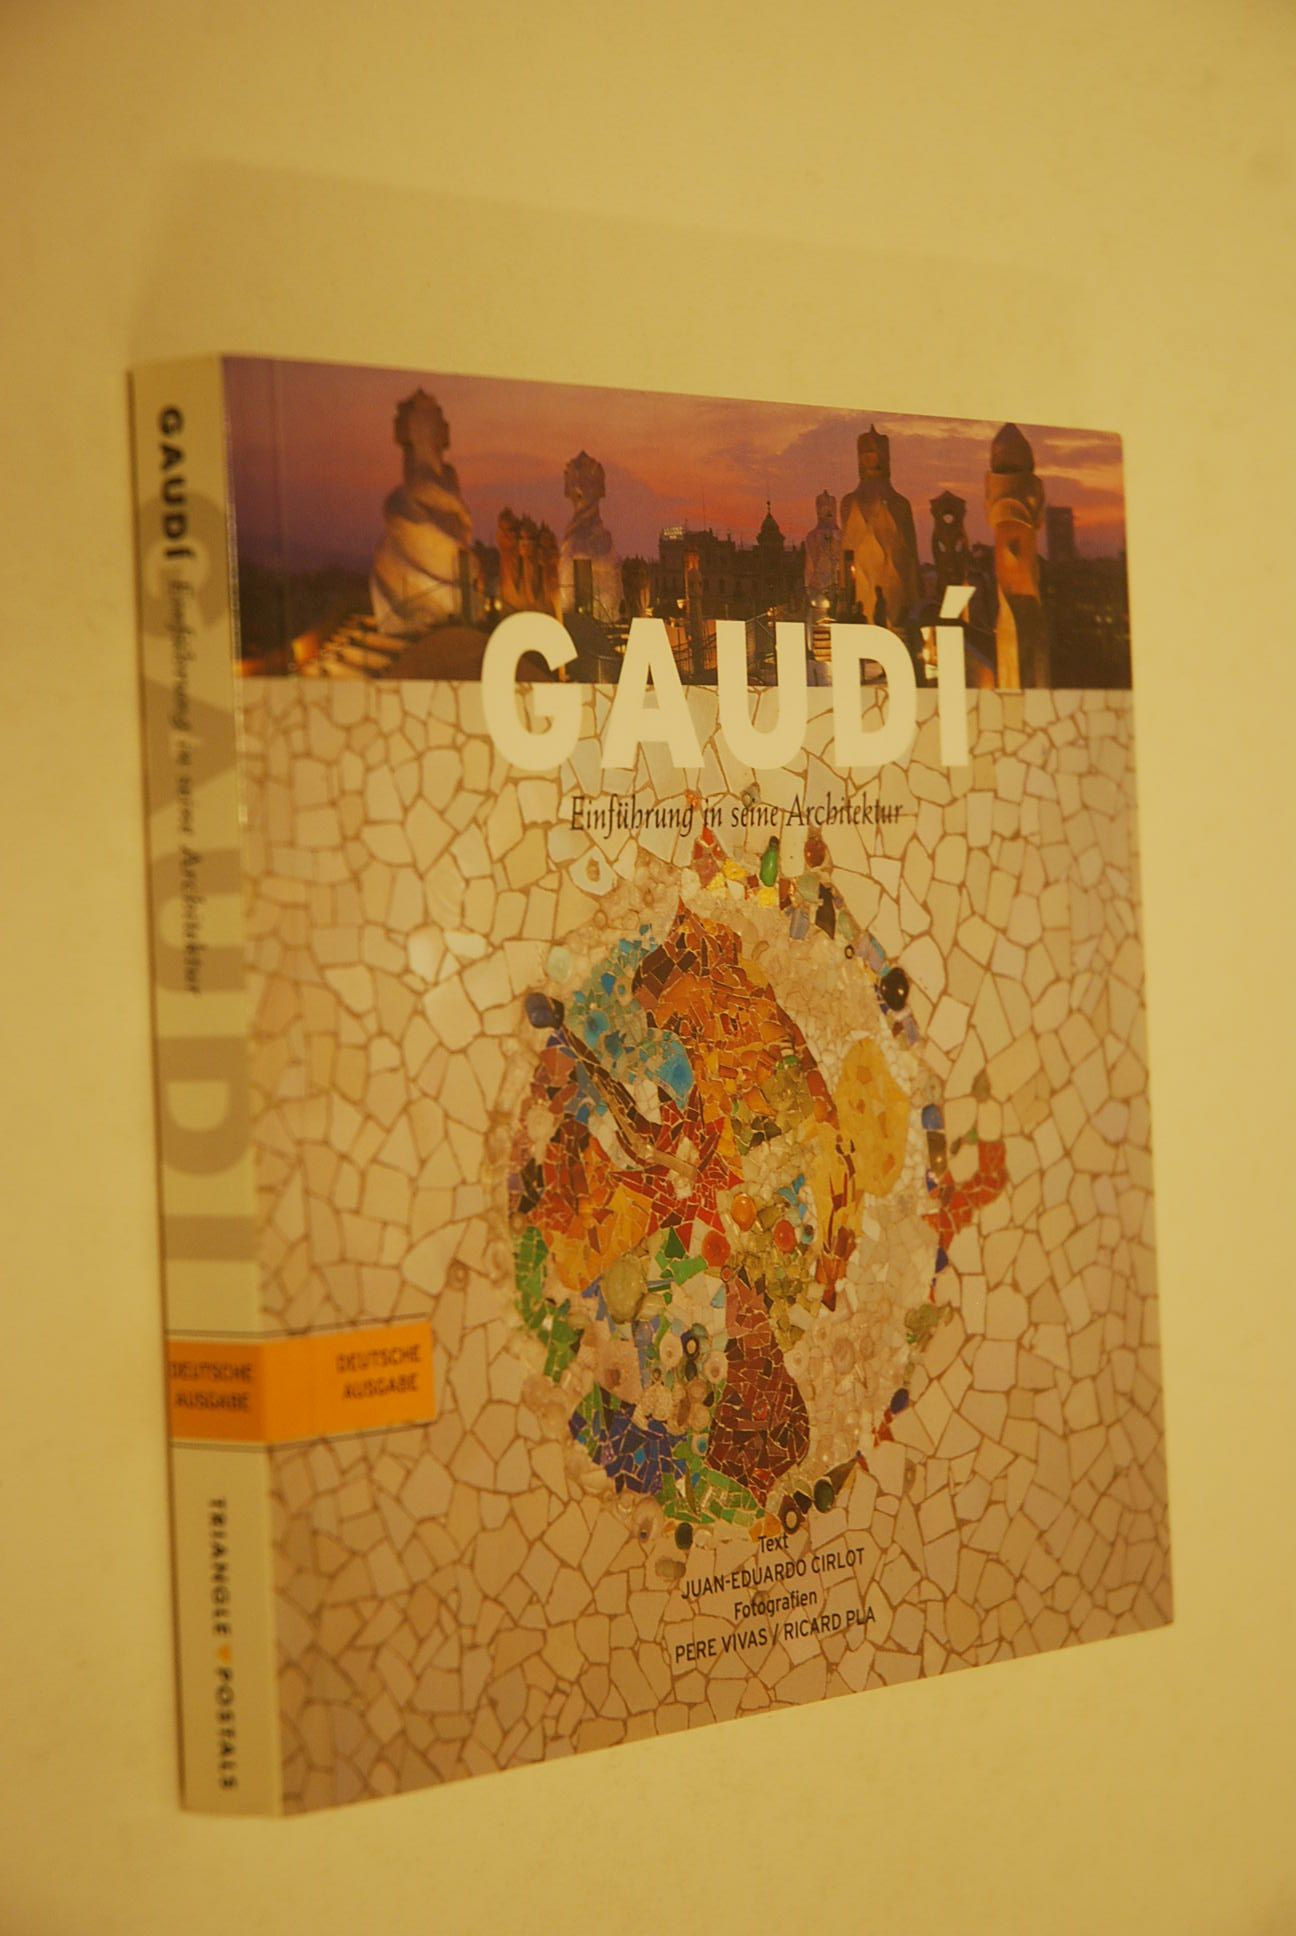 Gaudí: Einführung in seine Architektur. Text:. [Übers. Susanne Engler] - Cirlot, Juan-Eduardo und Antoni Gaudí